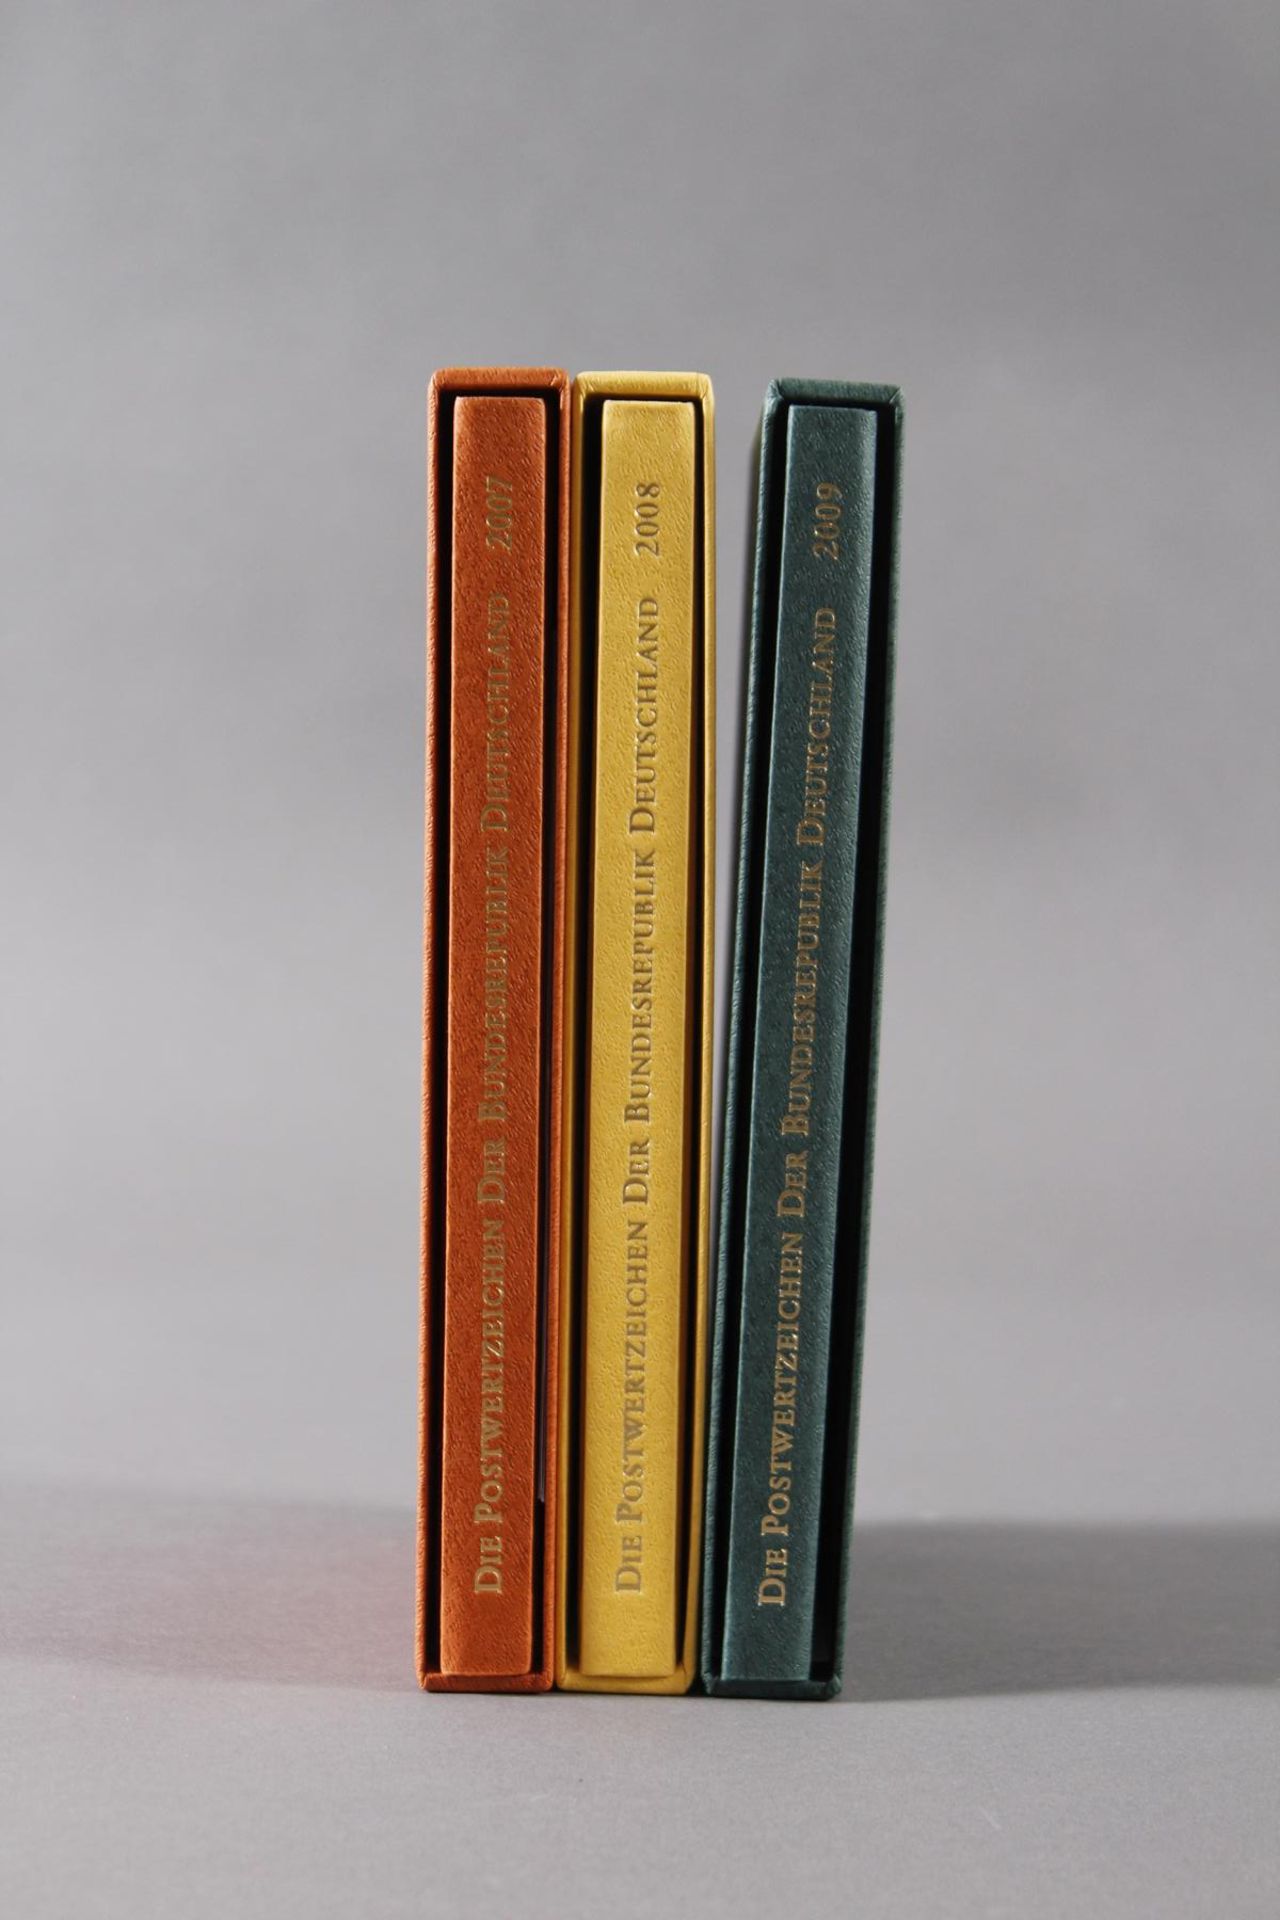 Jahrbücher Bundesrespublik Deutschland 2007-2009Insgesamt 3 Stück. Komplette, postfrische Sammlung